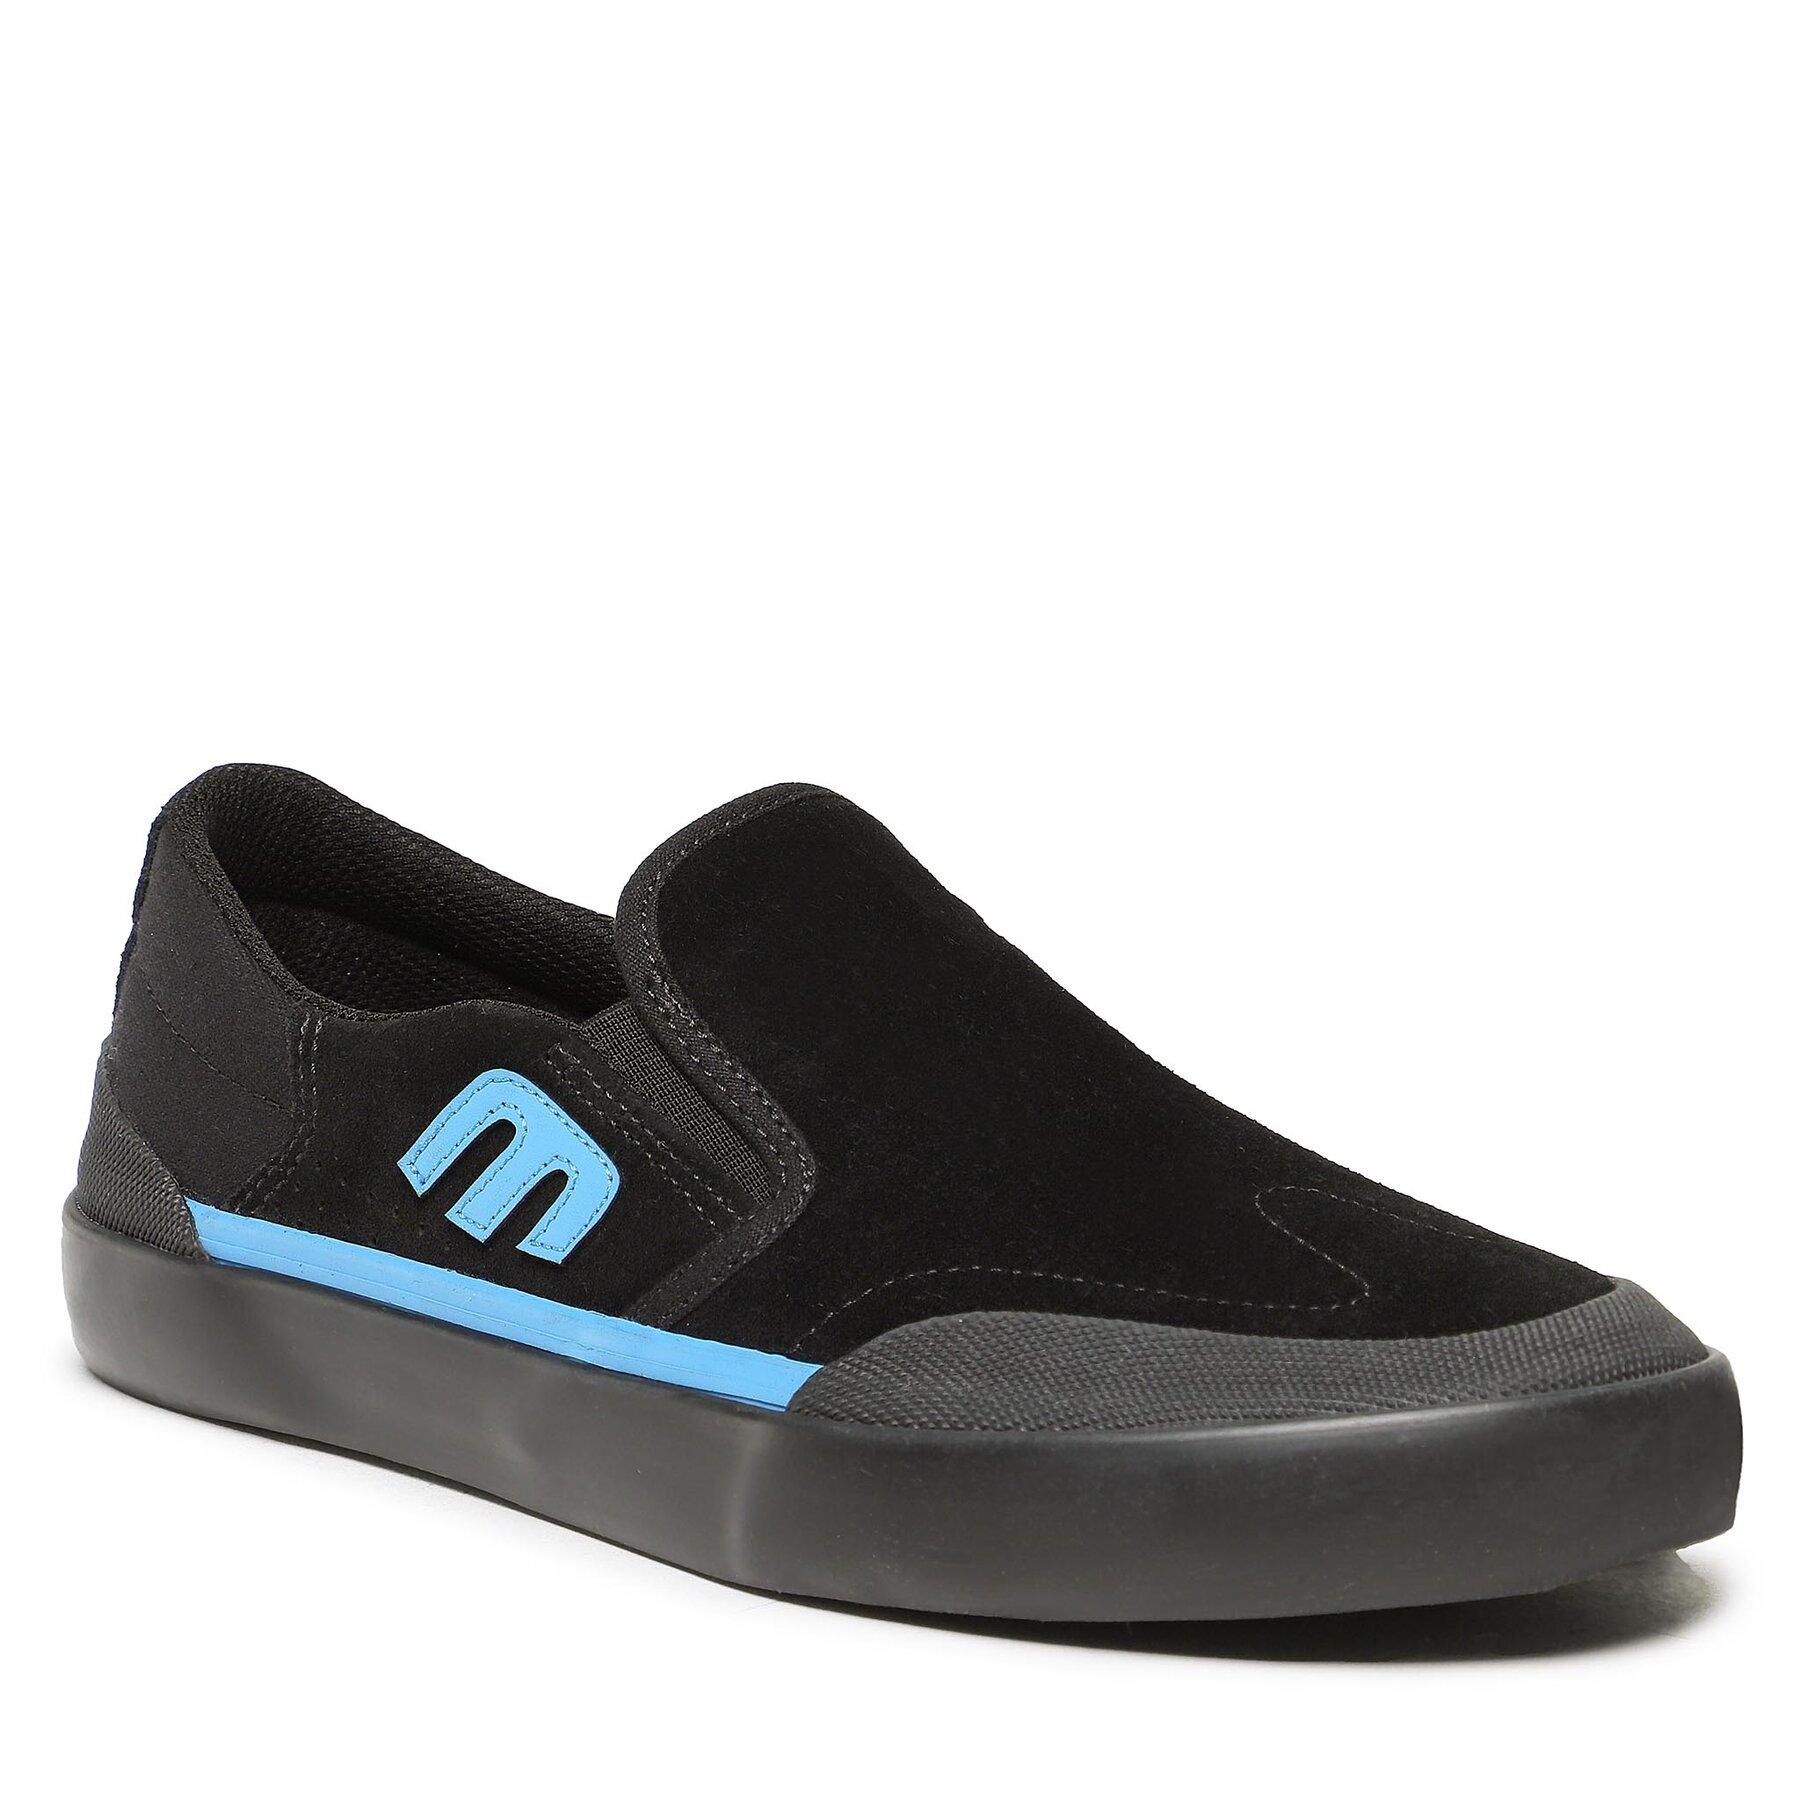 Etnies Marana Slip Xlt Noir Black Blue White 589 Chaussures Homme vue2